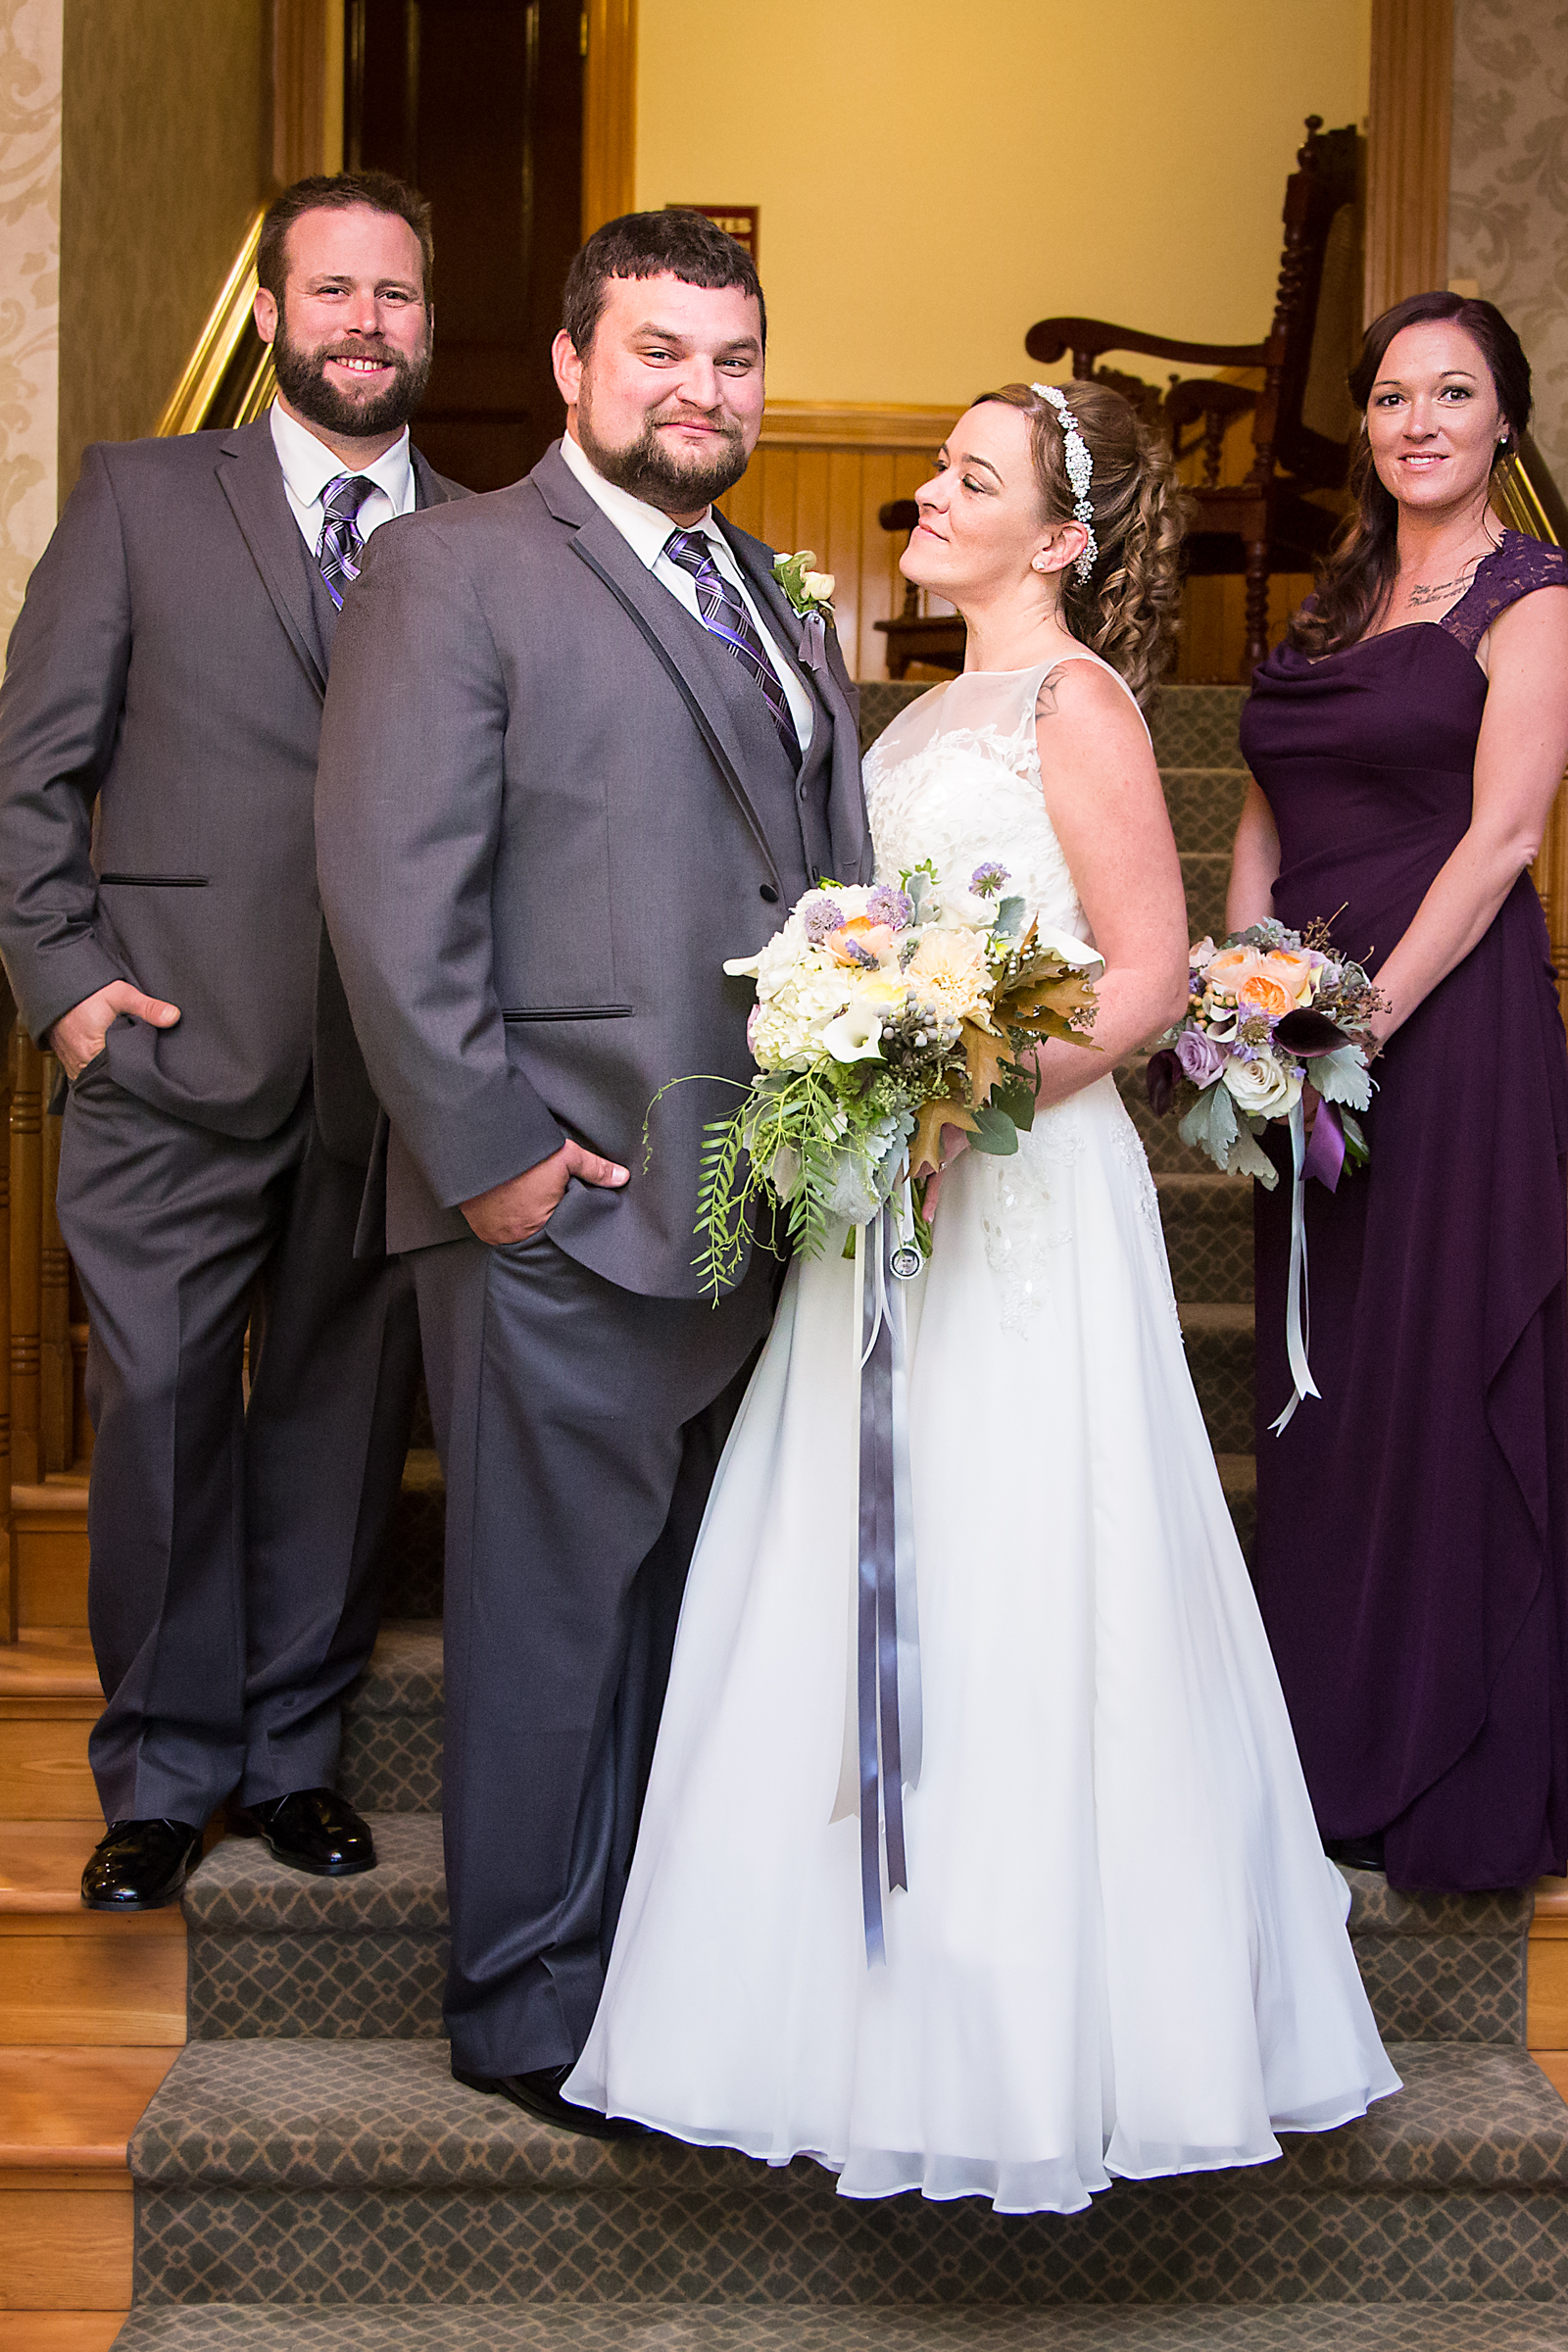 New Hampshire Wedding Photographer 070 - Portfolio: Engagements / Weddings